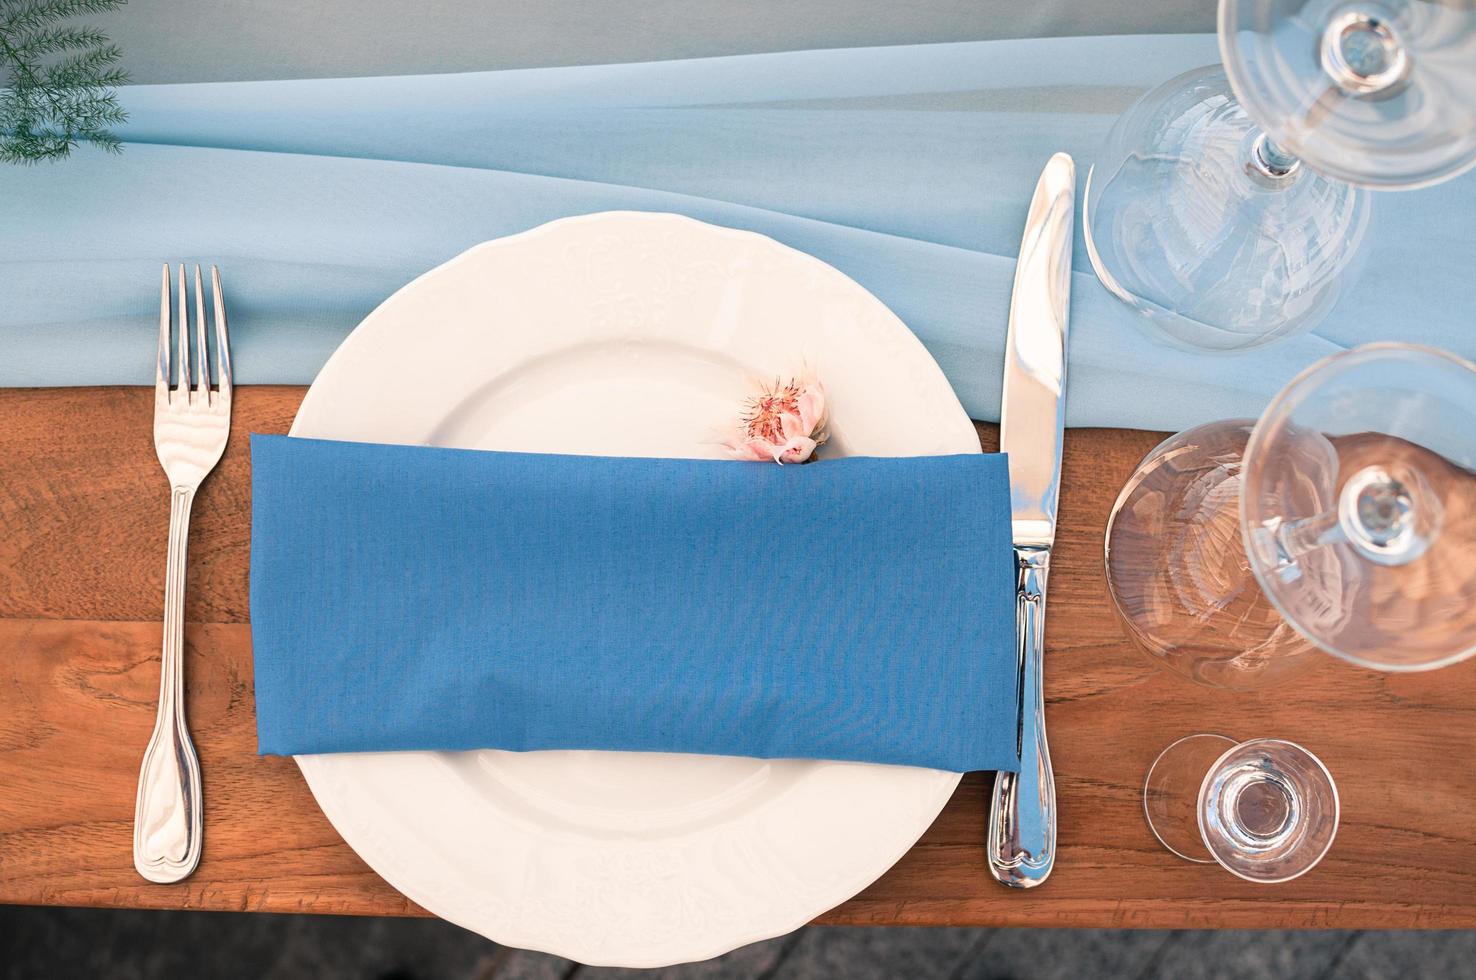 configuration de table de restaurant, serviette bleue, plein air, décoration d'événement photo